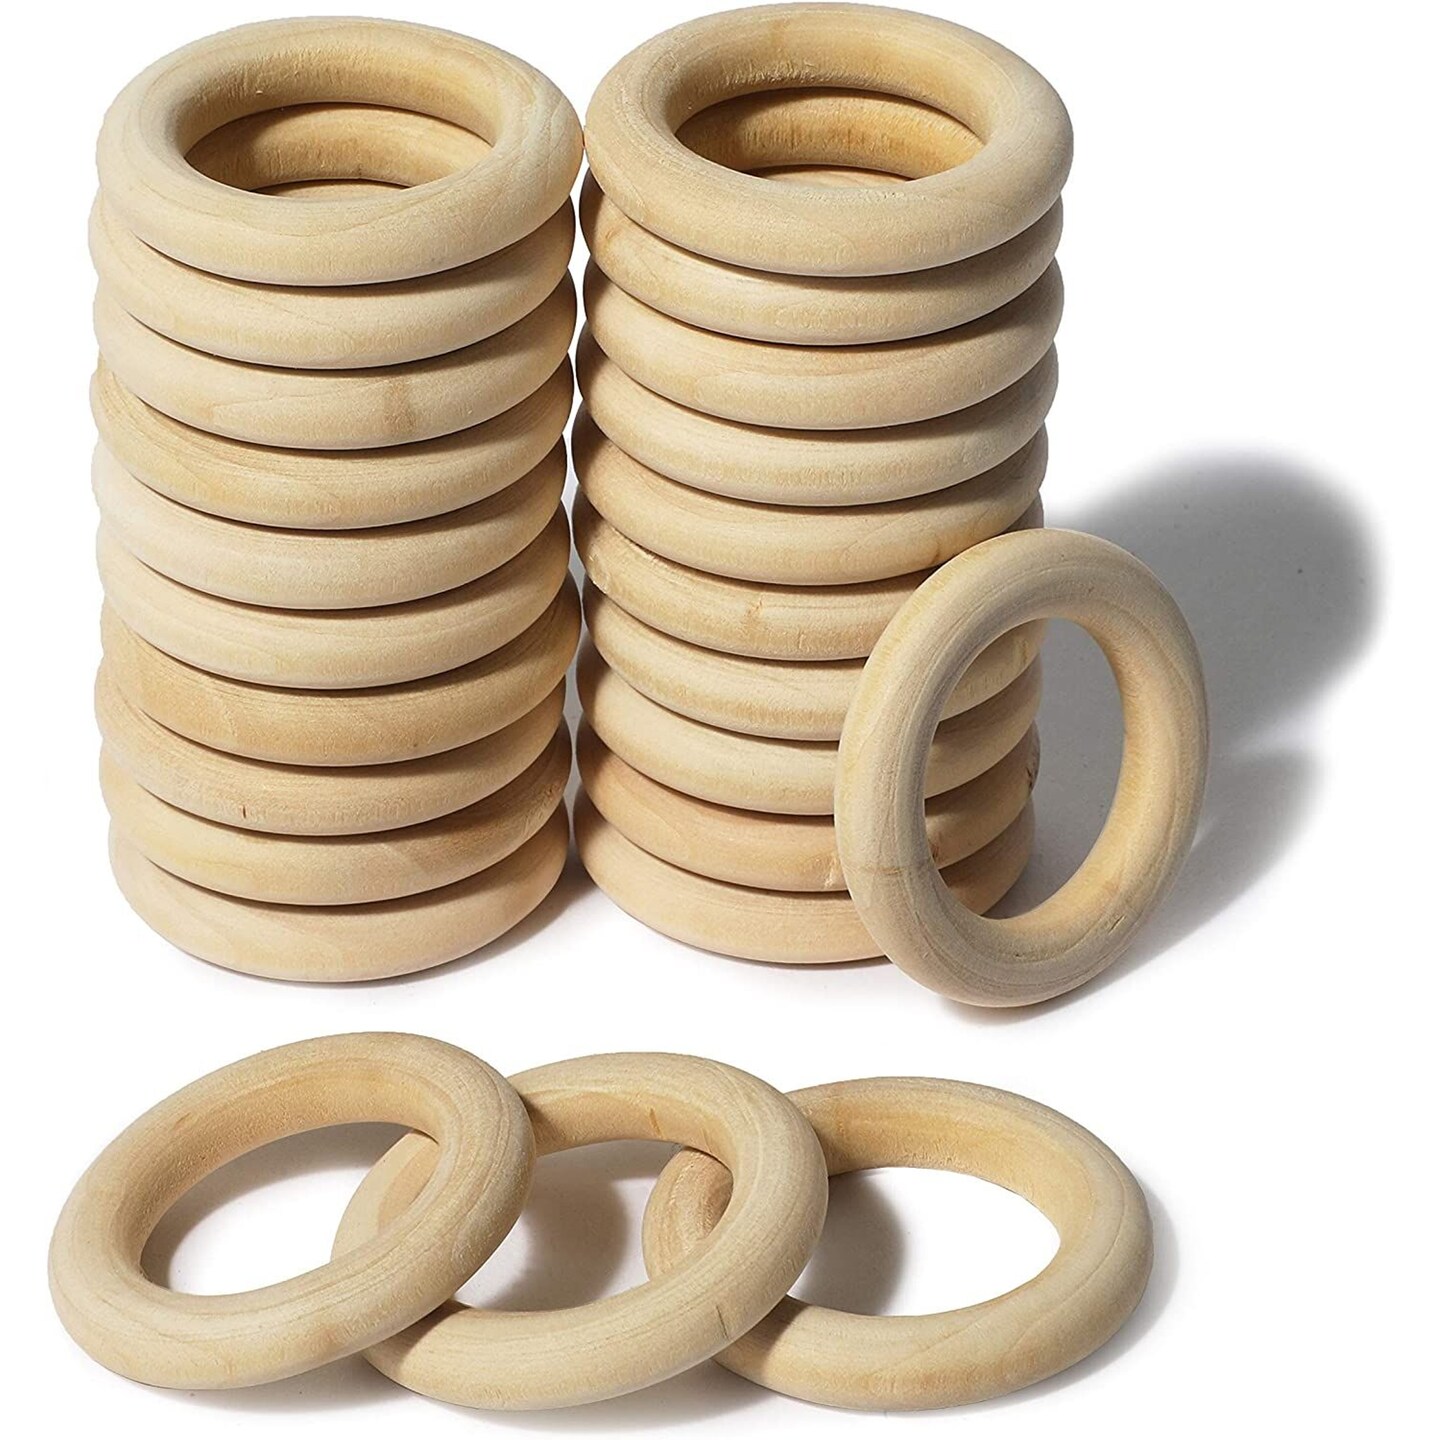 Macrame Wooden Rings - Wood Rings - Macrame Online Store